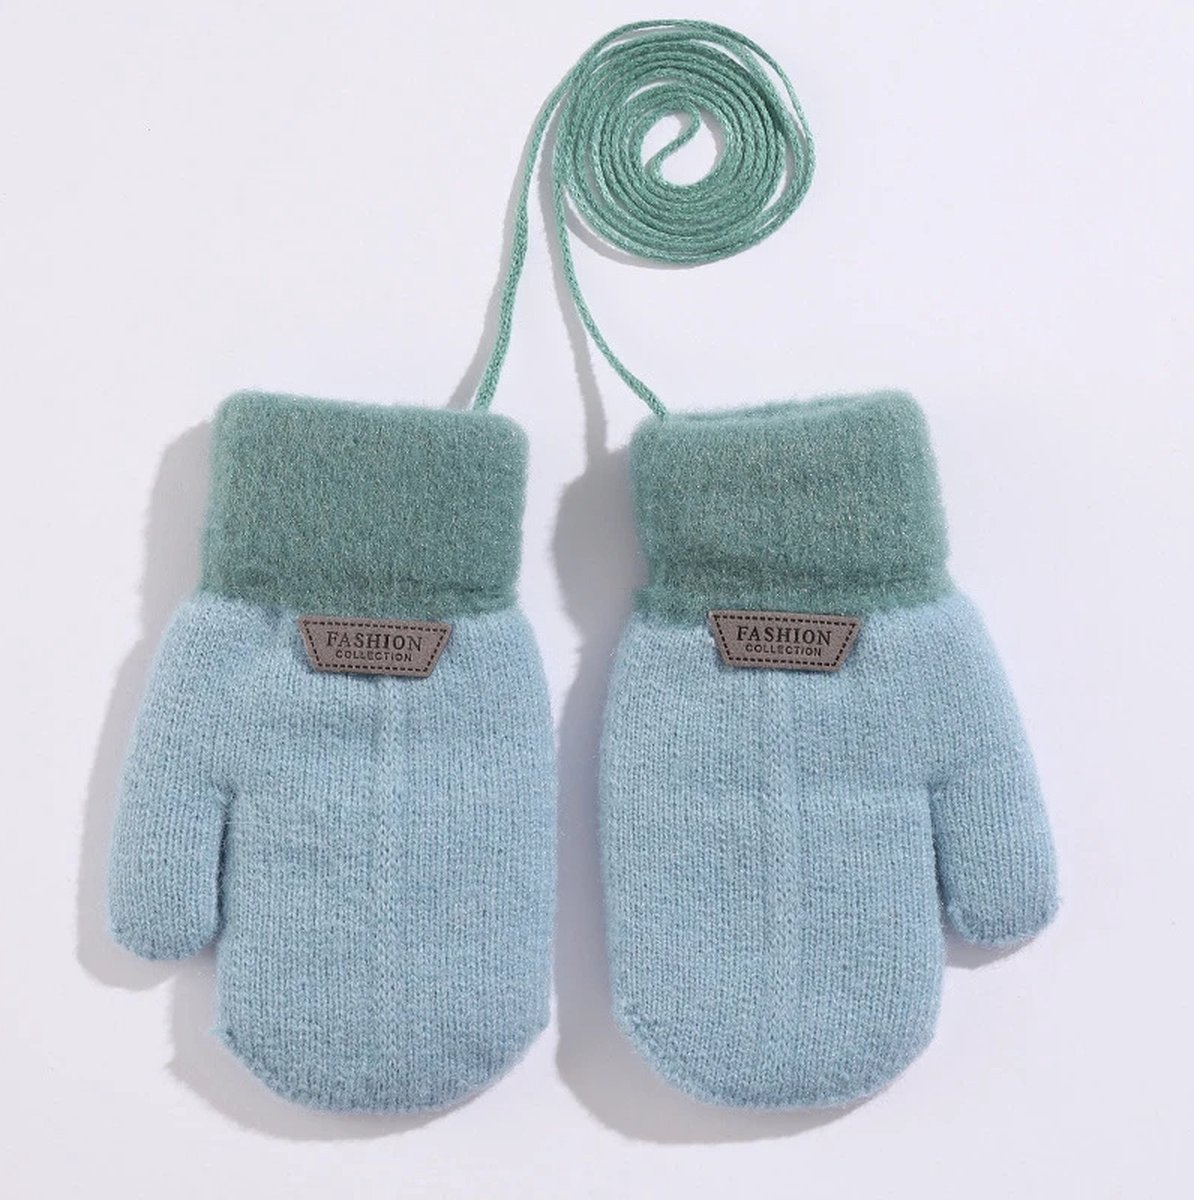 Ychee - Unisex Kinder Winter Wanten - Handschoenen - Wol - Warm - Klein - 1-3 jaar - Licht Blauw - Ychee